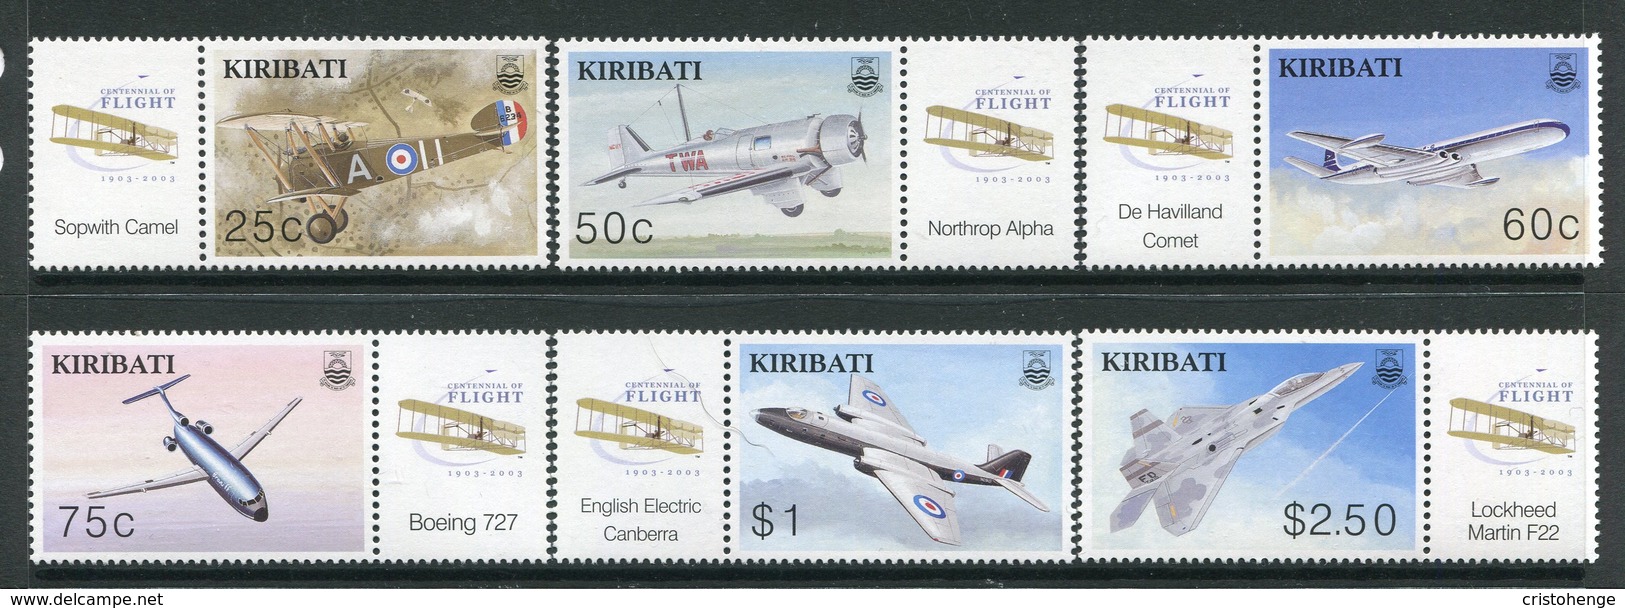 Kiribati 2003 Centenary Of Powered Flight Set MNH (SG 677-82) - Kiribati (1979-...)